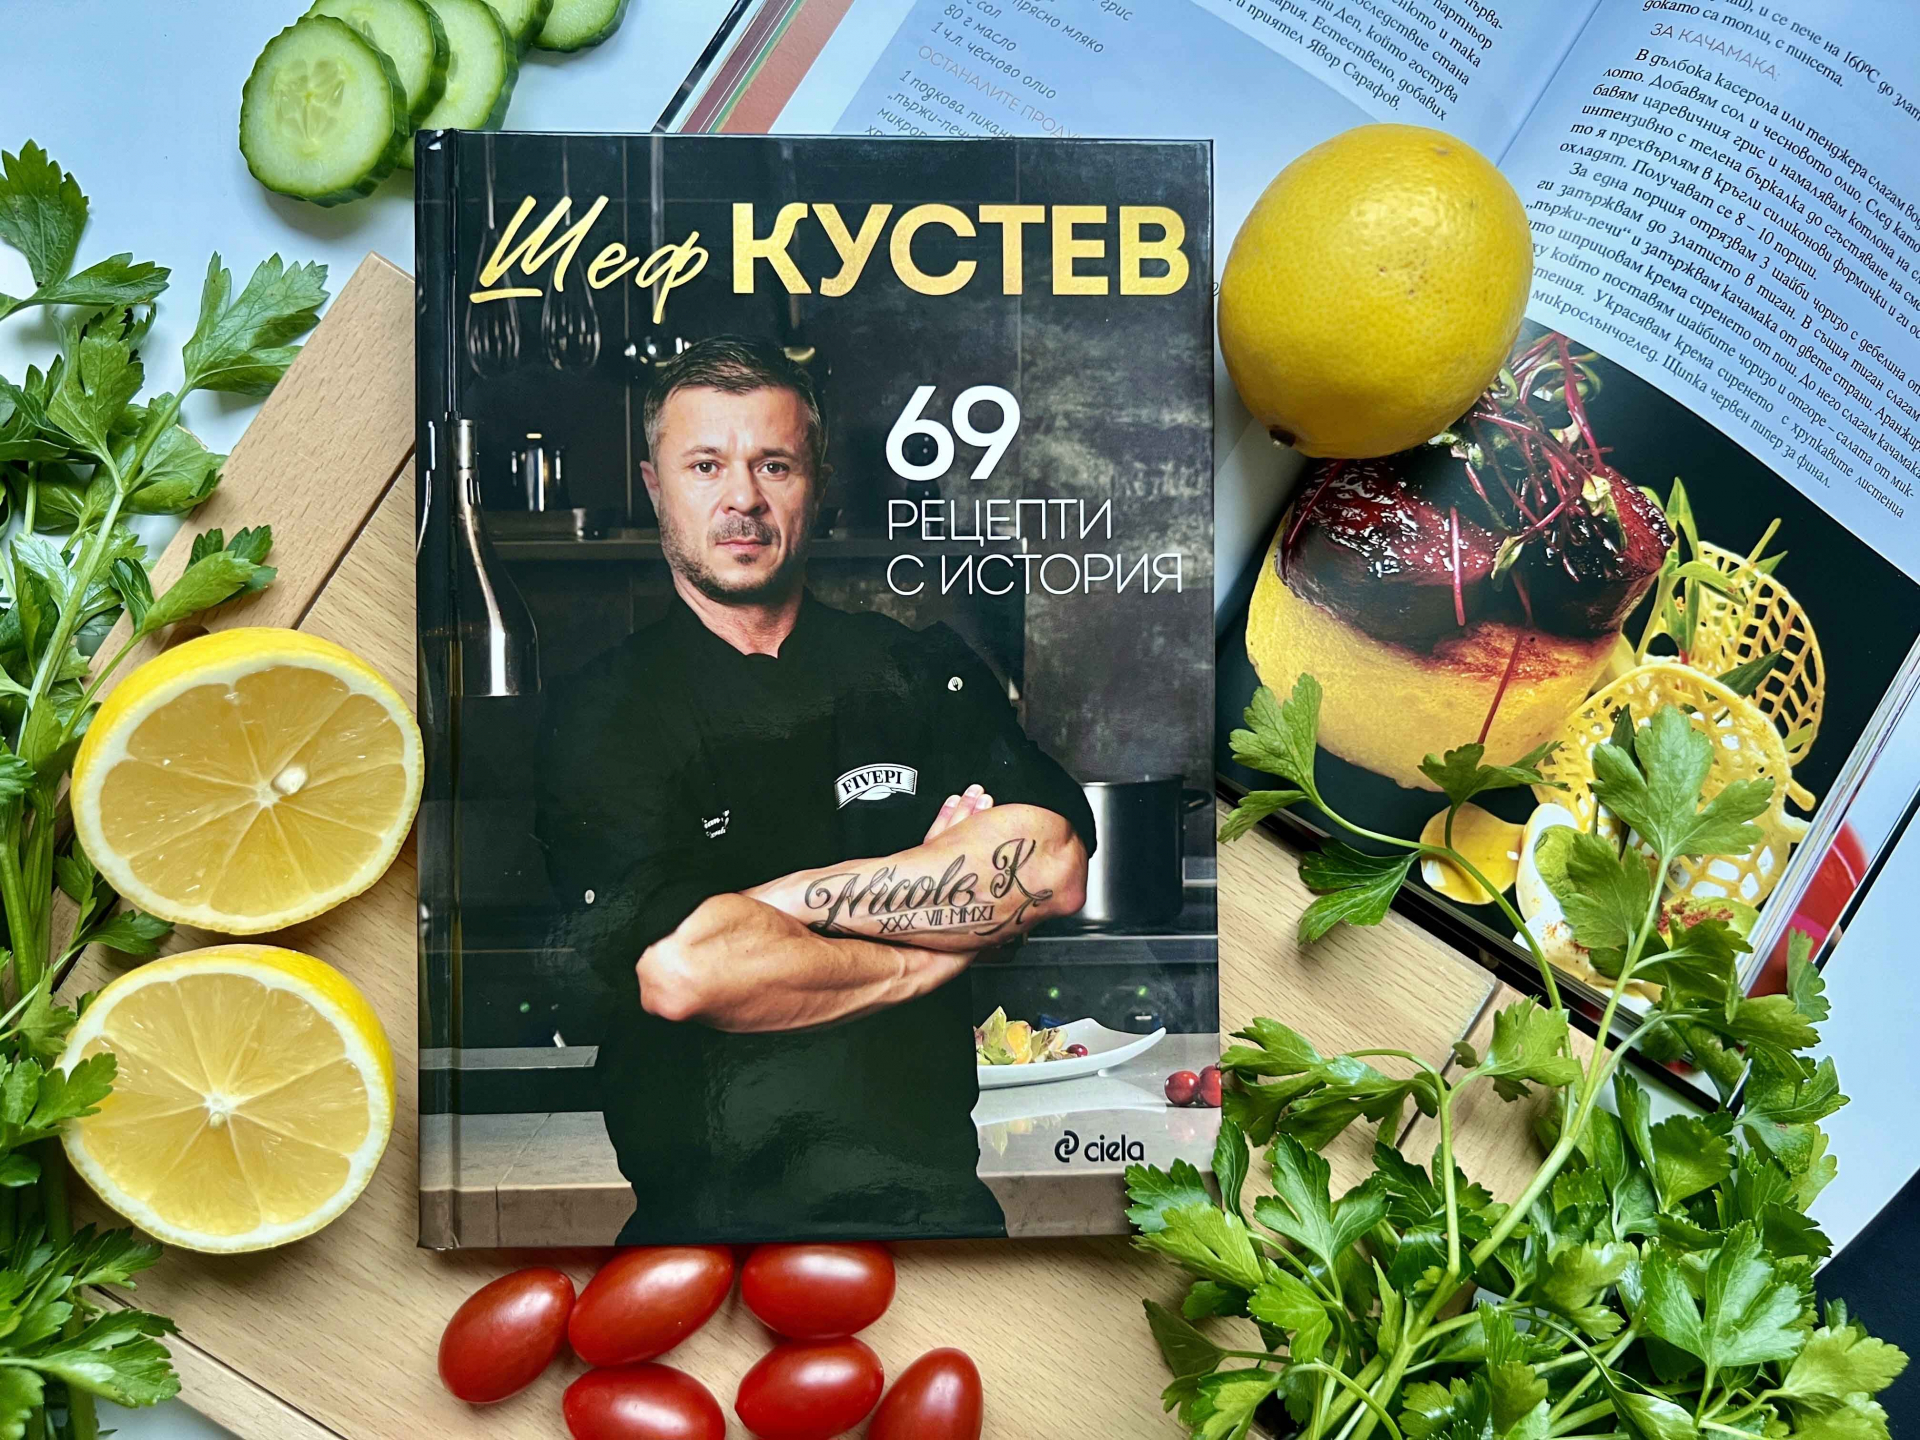 Властелинът на българската кулинарна сцена шеф Кустев разкрива своите „69 рецепти с история“